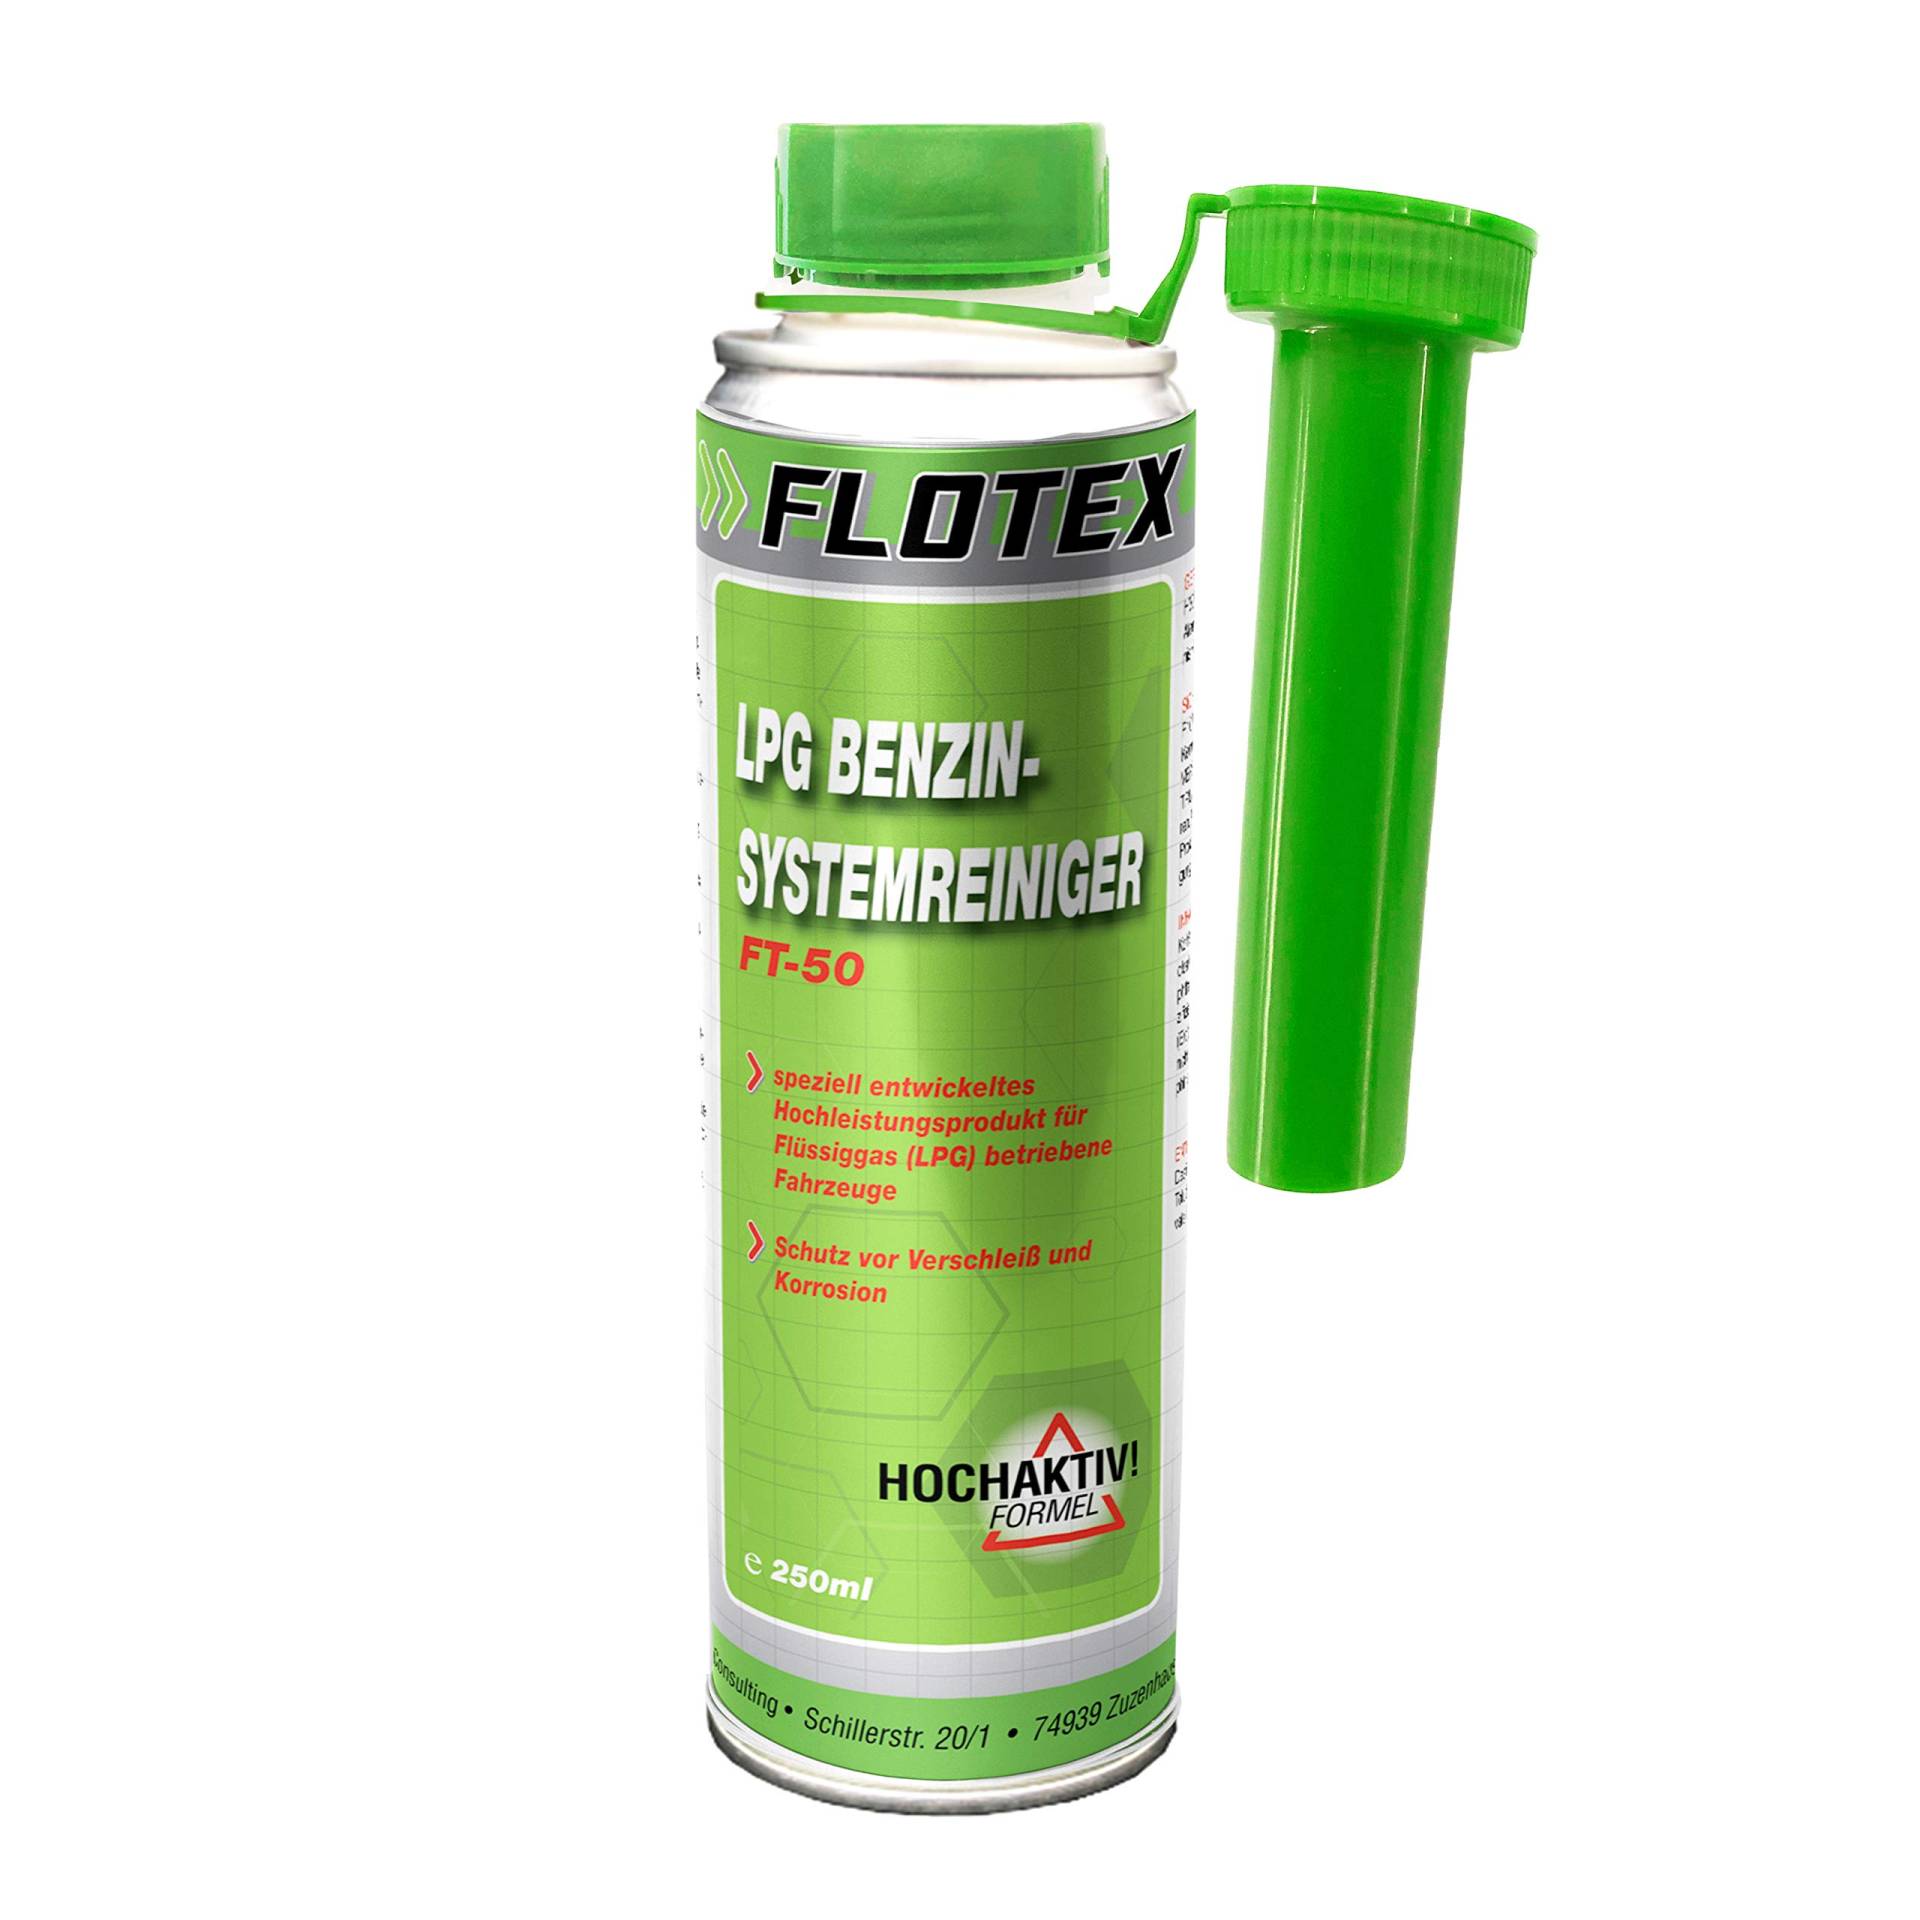 Flotex LPG Benzinsystemreiniger, 250ml Additiv Motor System Reiniger Benzin von Flotex